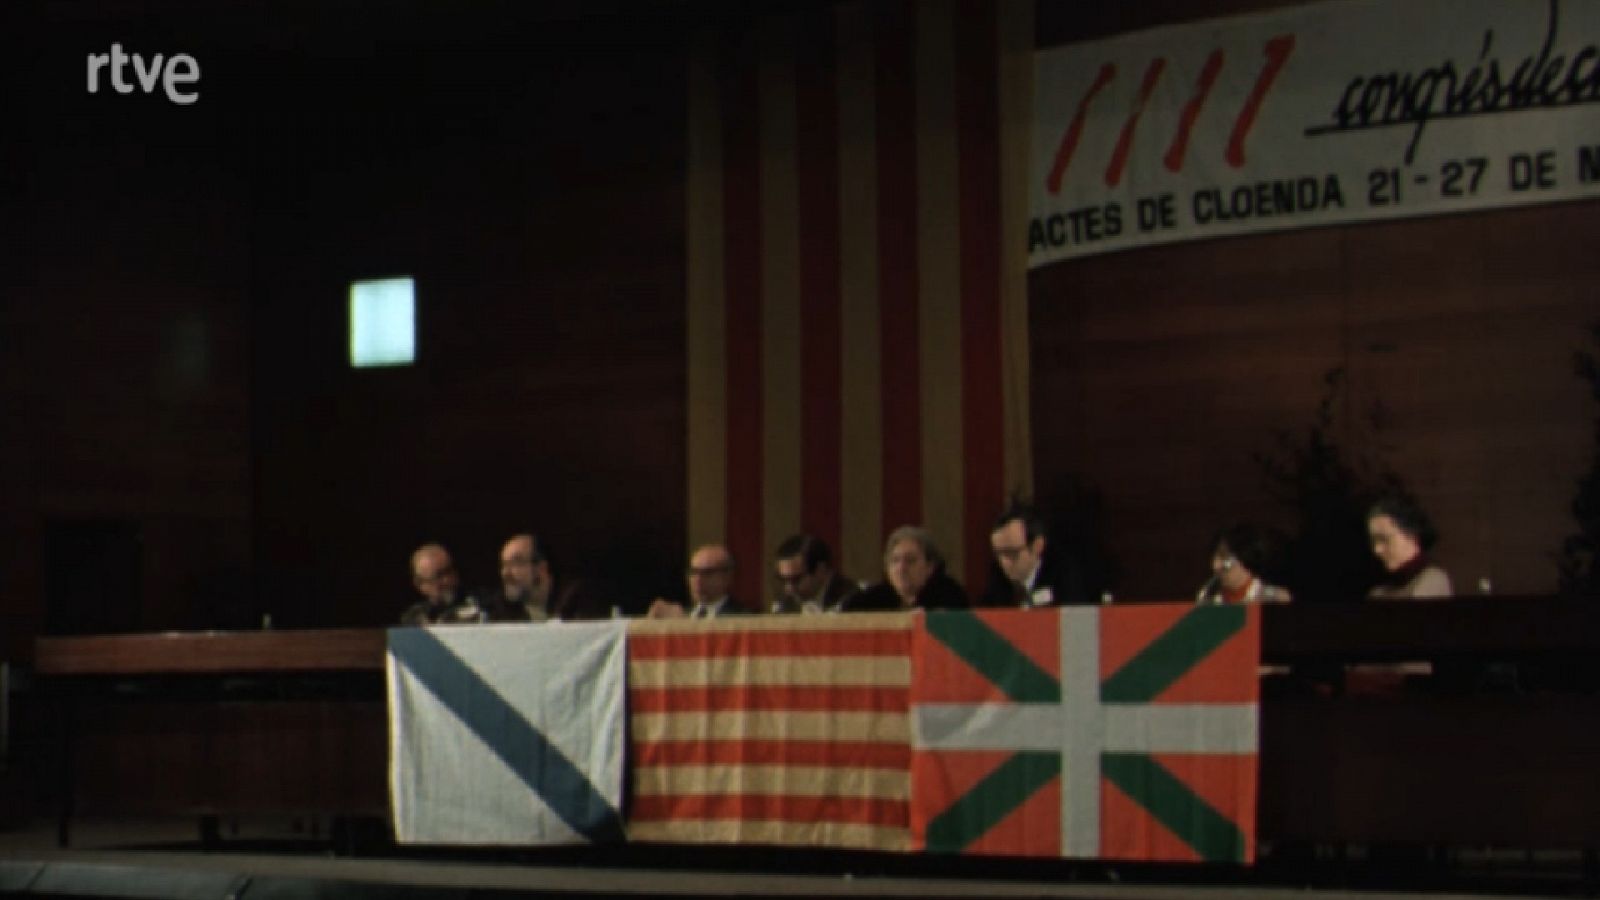 Arxiu TVE Catalunya - Giravolt - Nacions oprimides